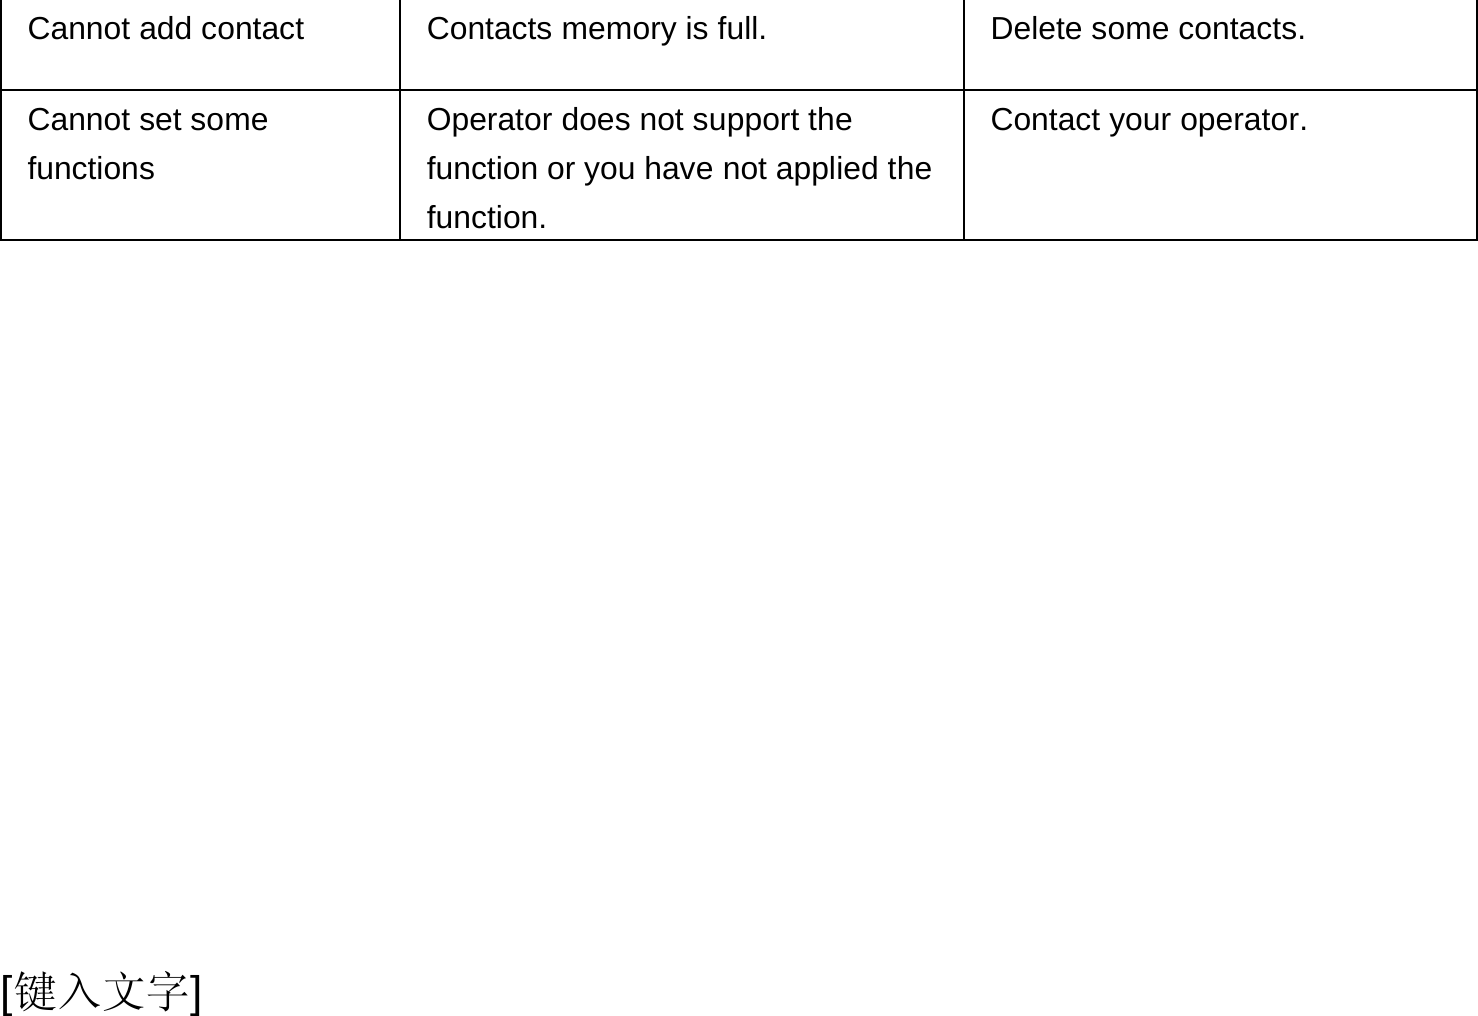  [键入文字] Cannot add contact  Contacts memory is full.  Delete some contacts. Cannot set some functions Operator does not support the function or you have not applied the function. Contact your operator.  